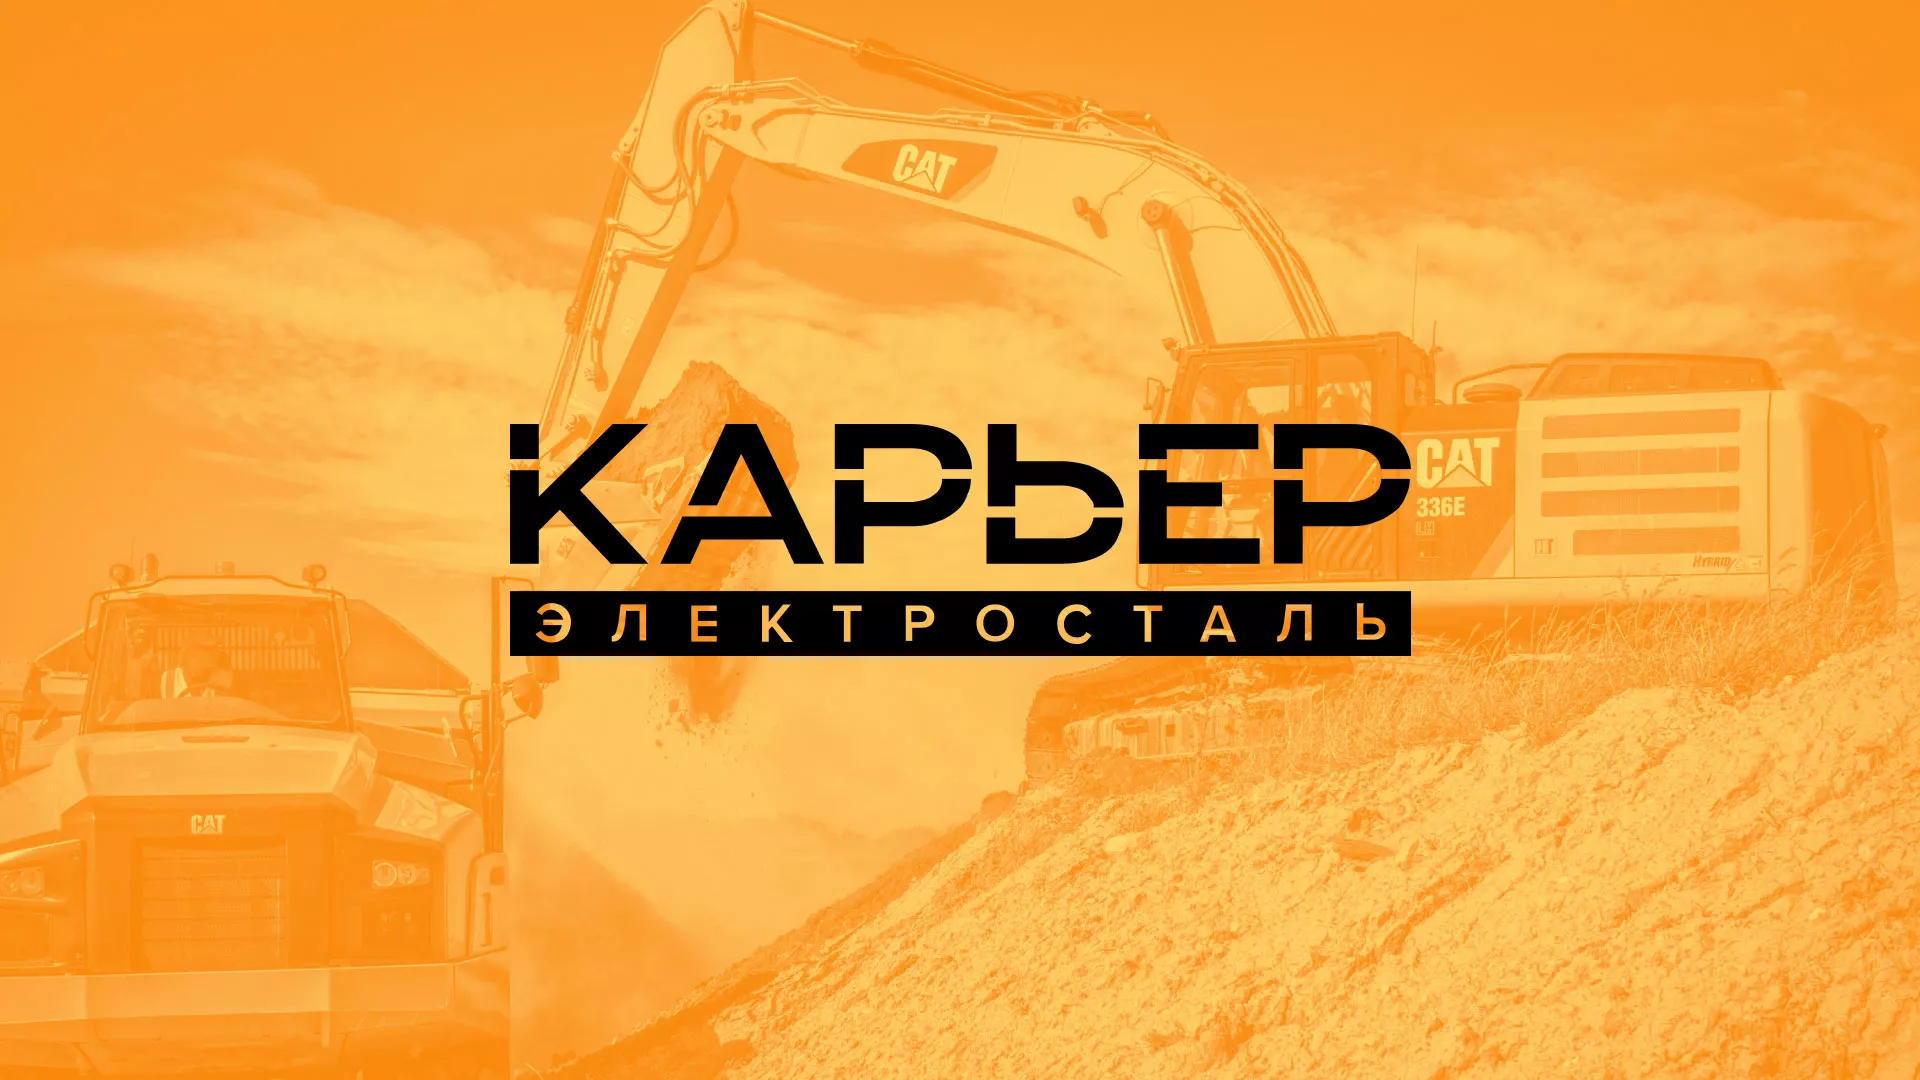 Разработка сайта по продаже нерудных материалов «Карьер» в Орехово-Зуево